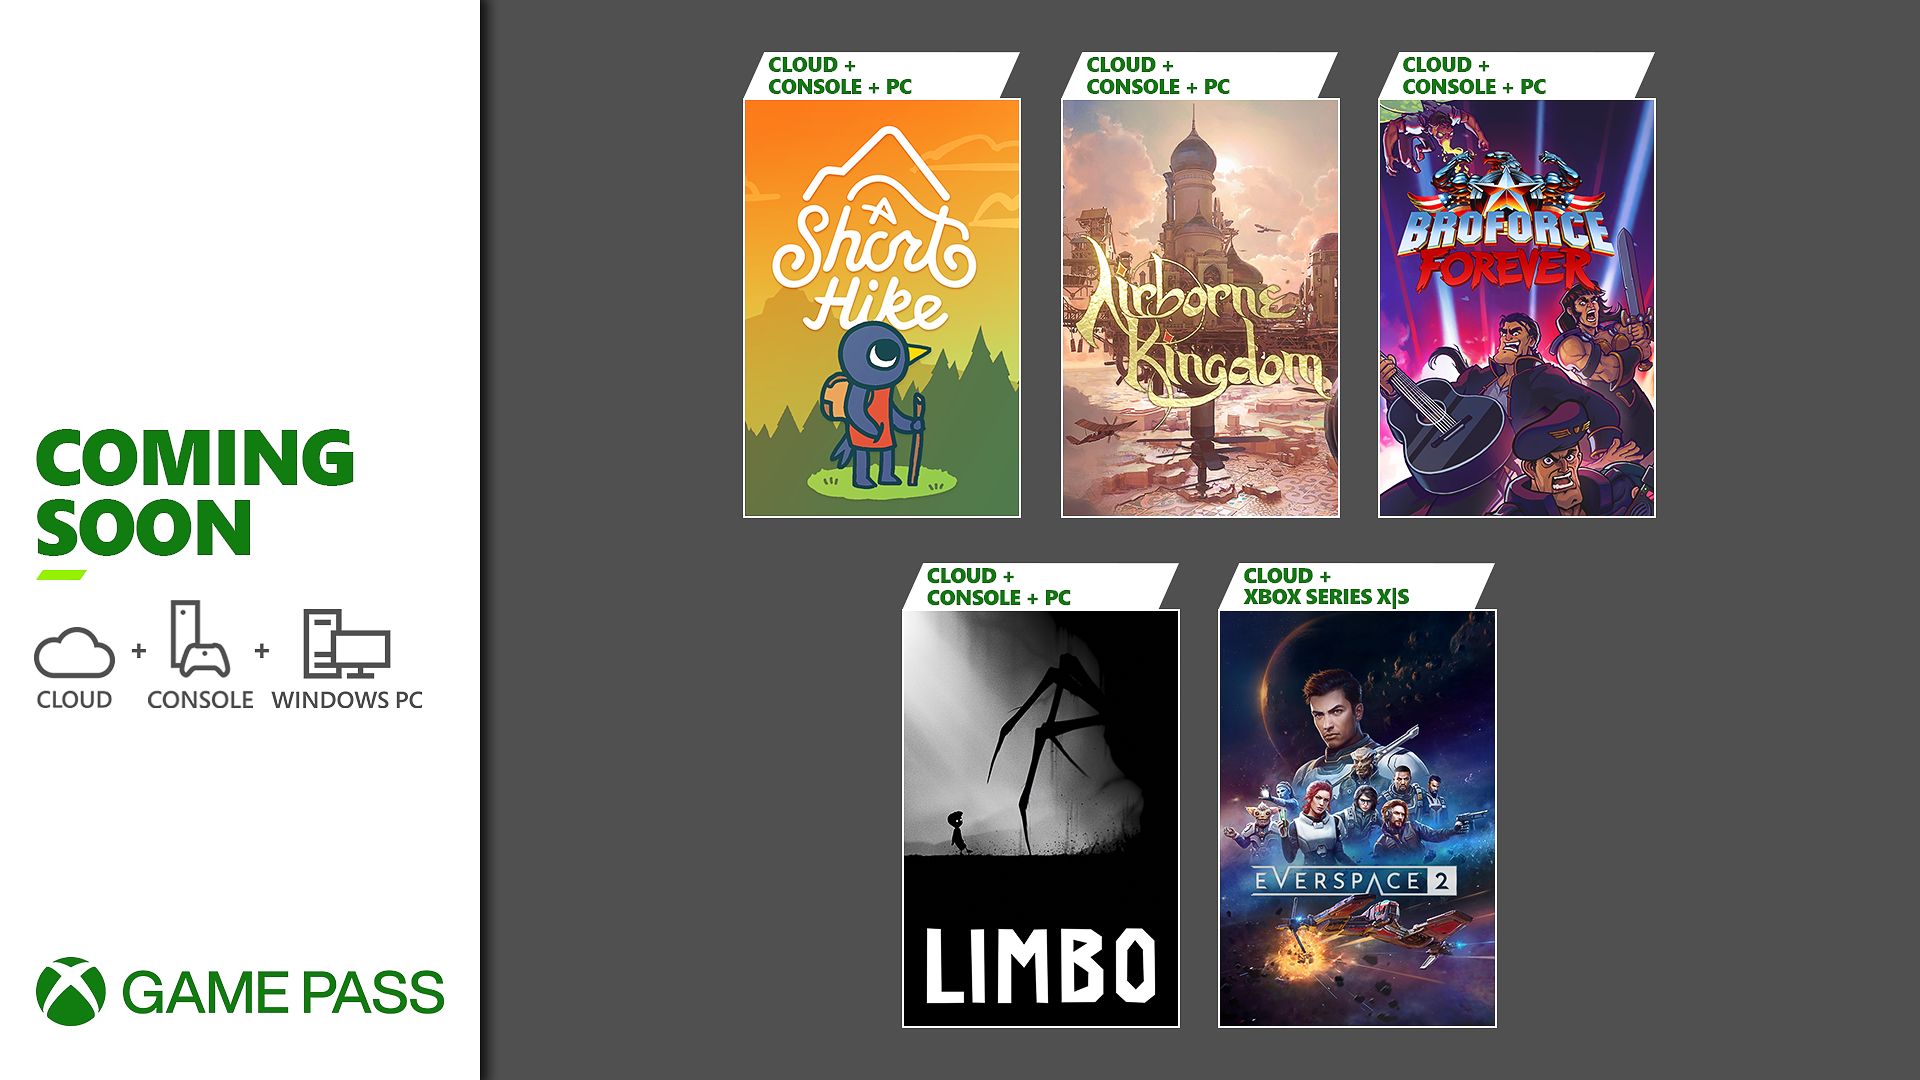 Xbox Game Pass afegeix nous títols a la seva biblioteca, incloent-hi Broforce Forever, Everspace 2 i molt més